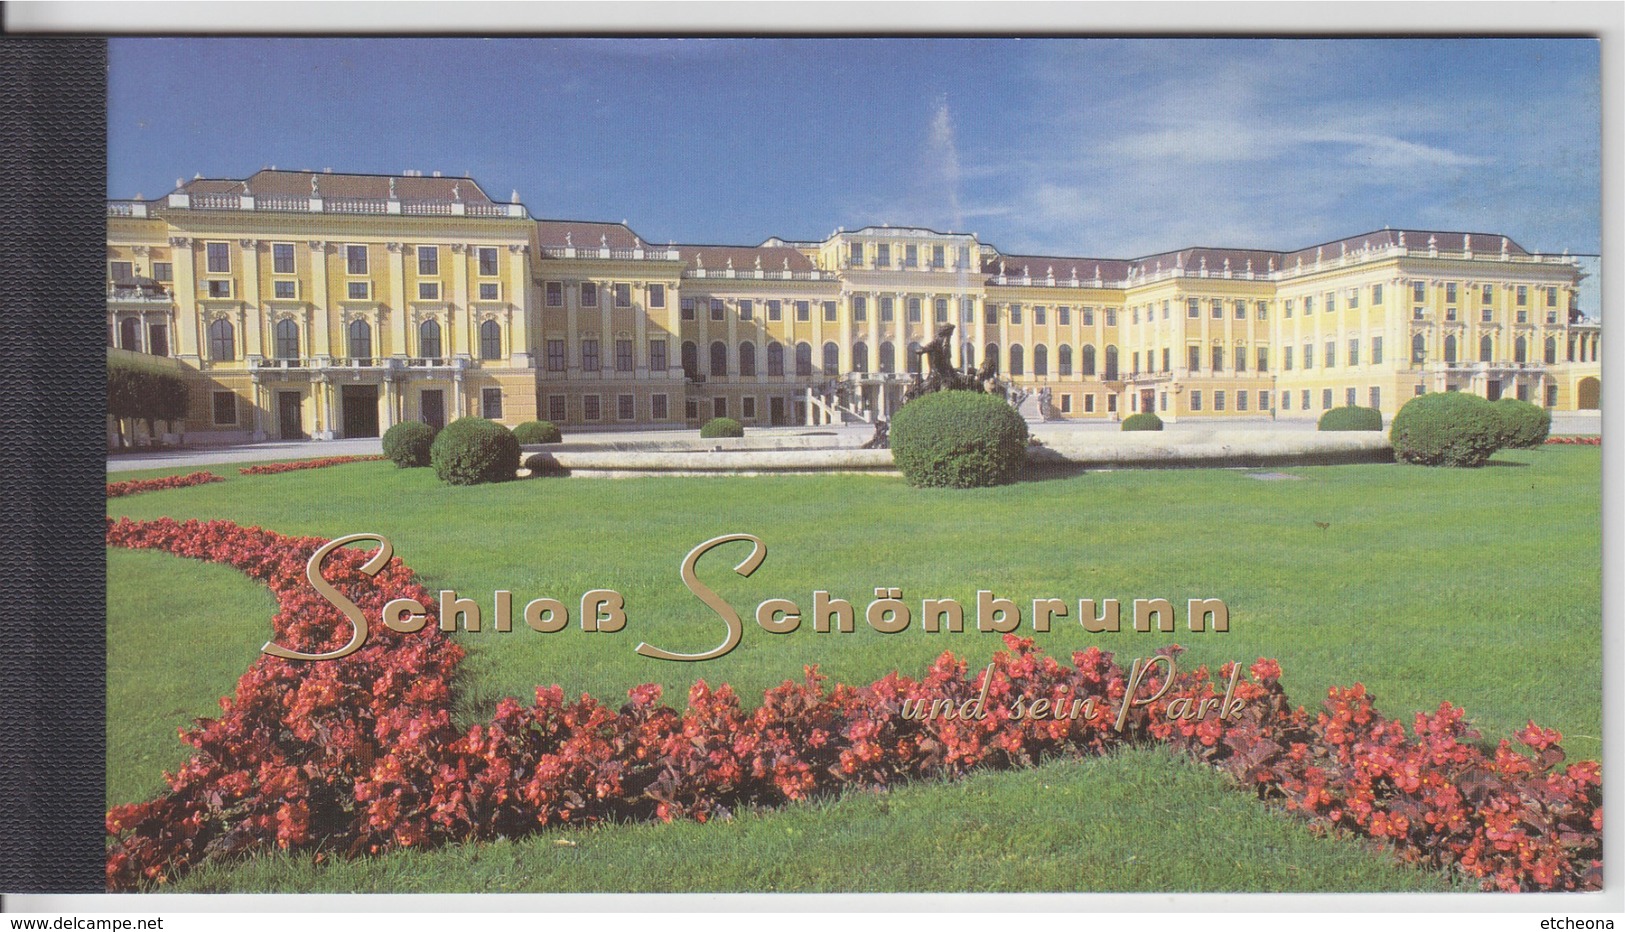 = Carnet Le Château Et Les Jardins De Schönbrunn à Vienne En Autriche C290 état Neuf, Nations Unies Vienne - Booklets